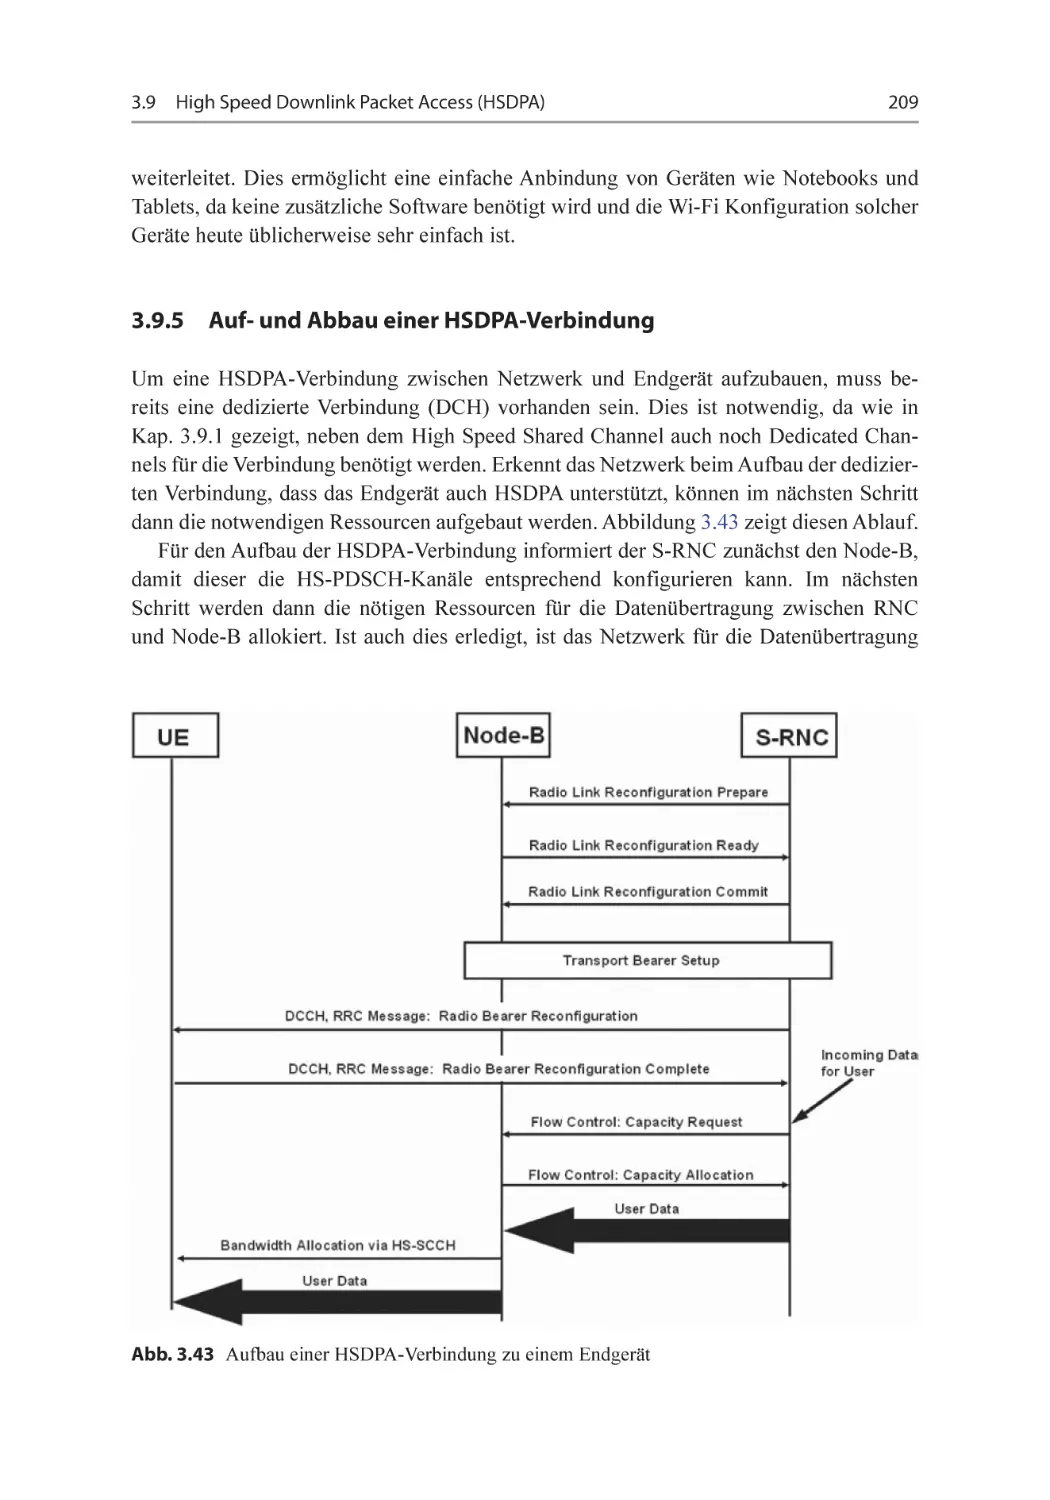 3.9.5 Auf- und Abbau einer HSDPA-Verbindung